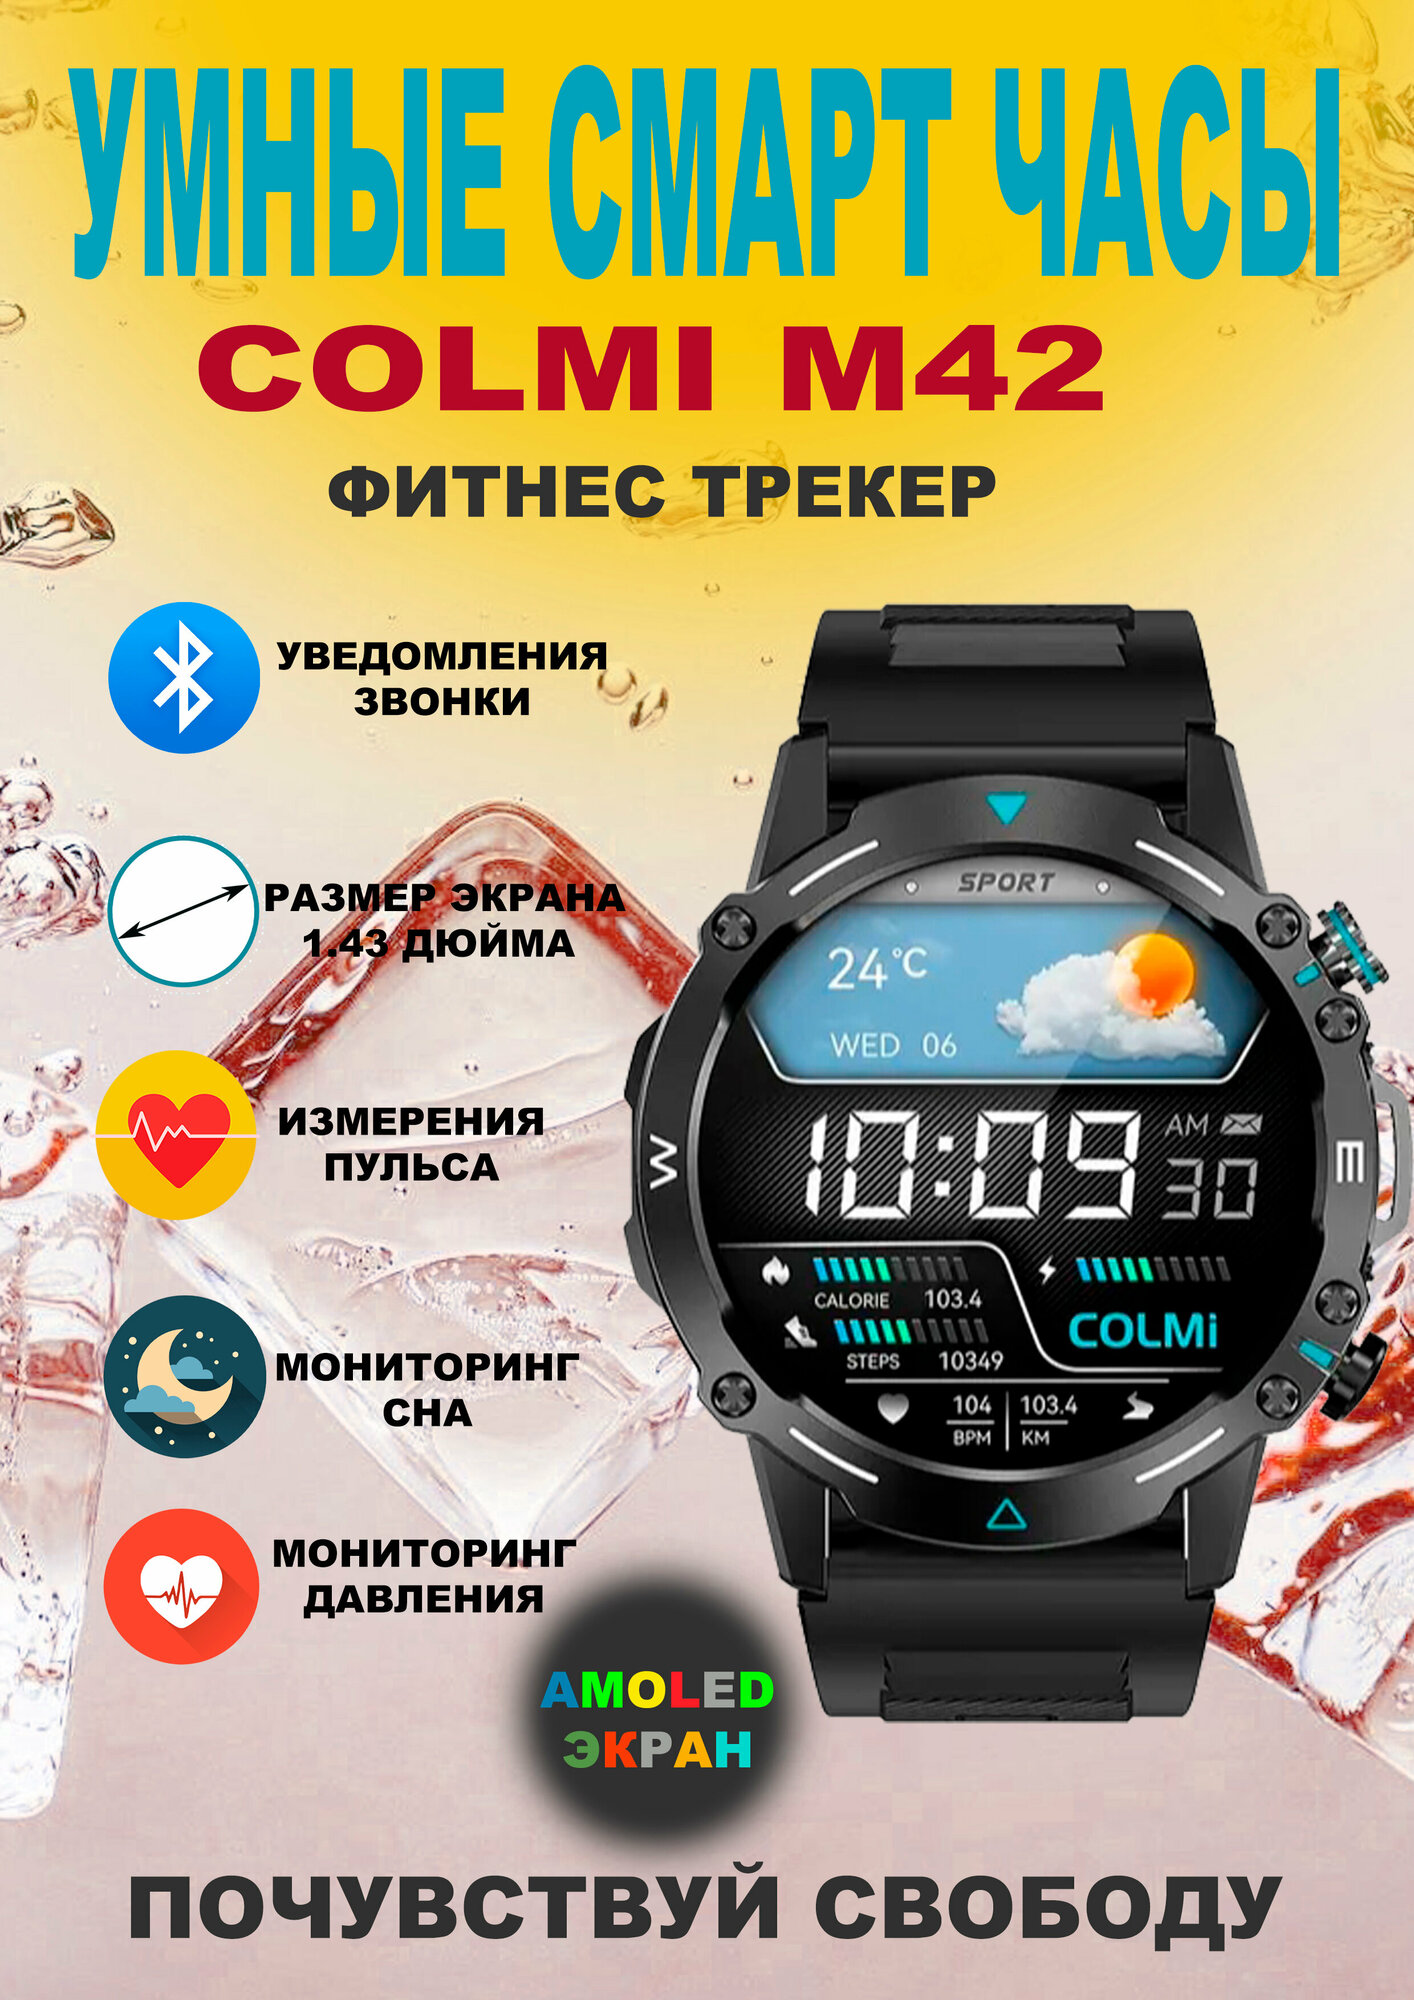 Смарт-часы COLMI M42 с 1,43-дюймовым AMOLED-дисплеем, блютуз звонки, фитнес трекер, качество экрана на высшем уровне, русский язык, высшее качество